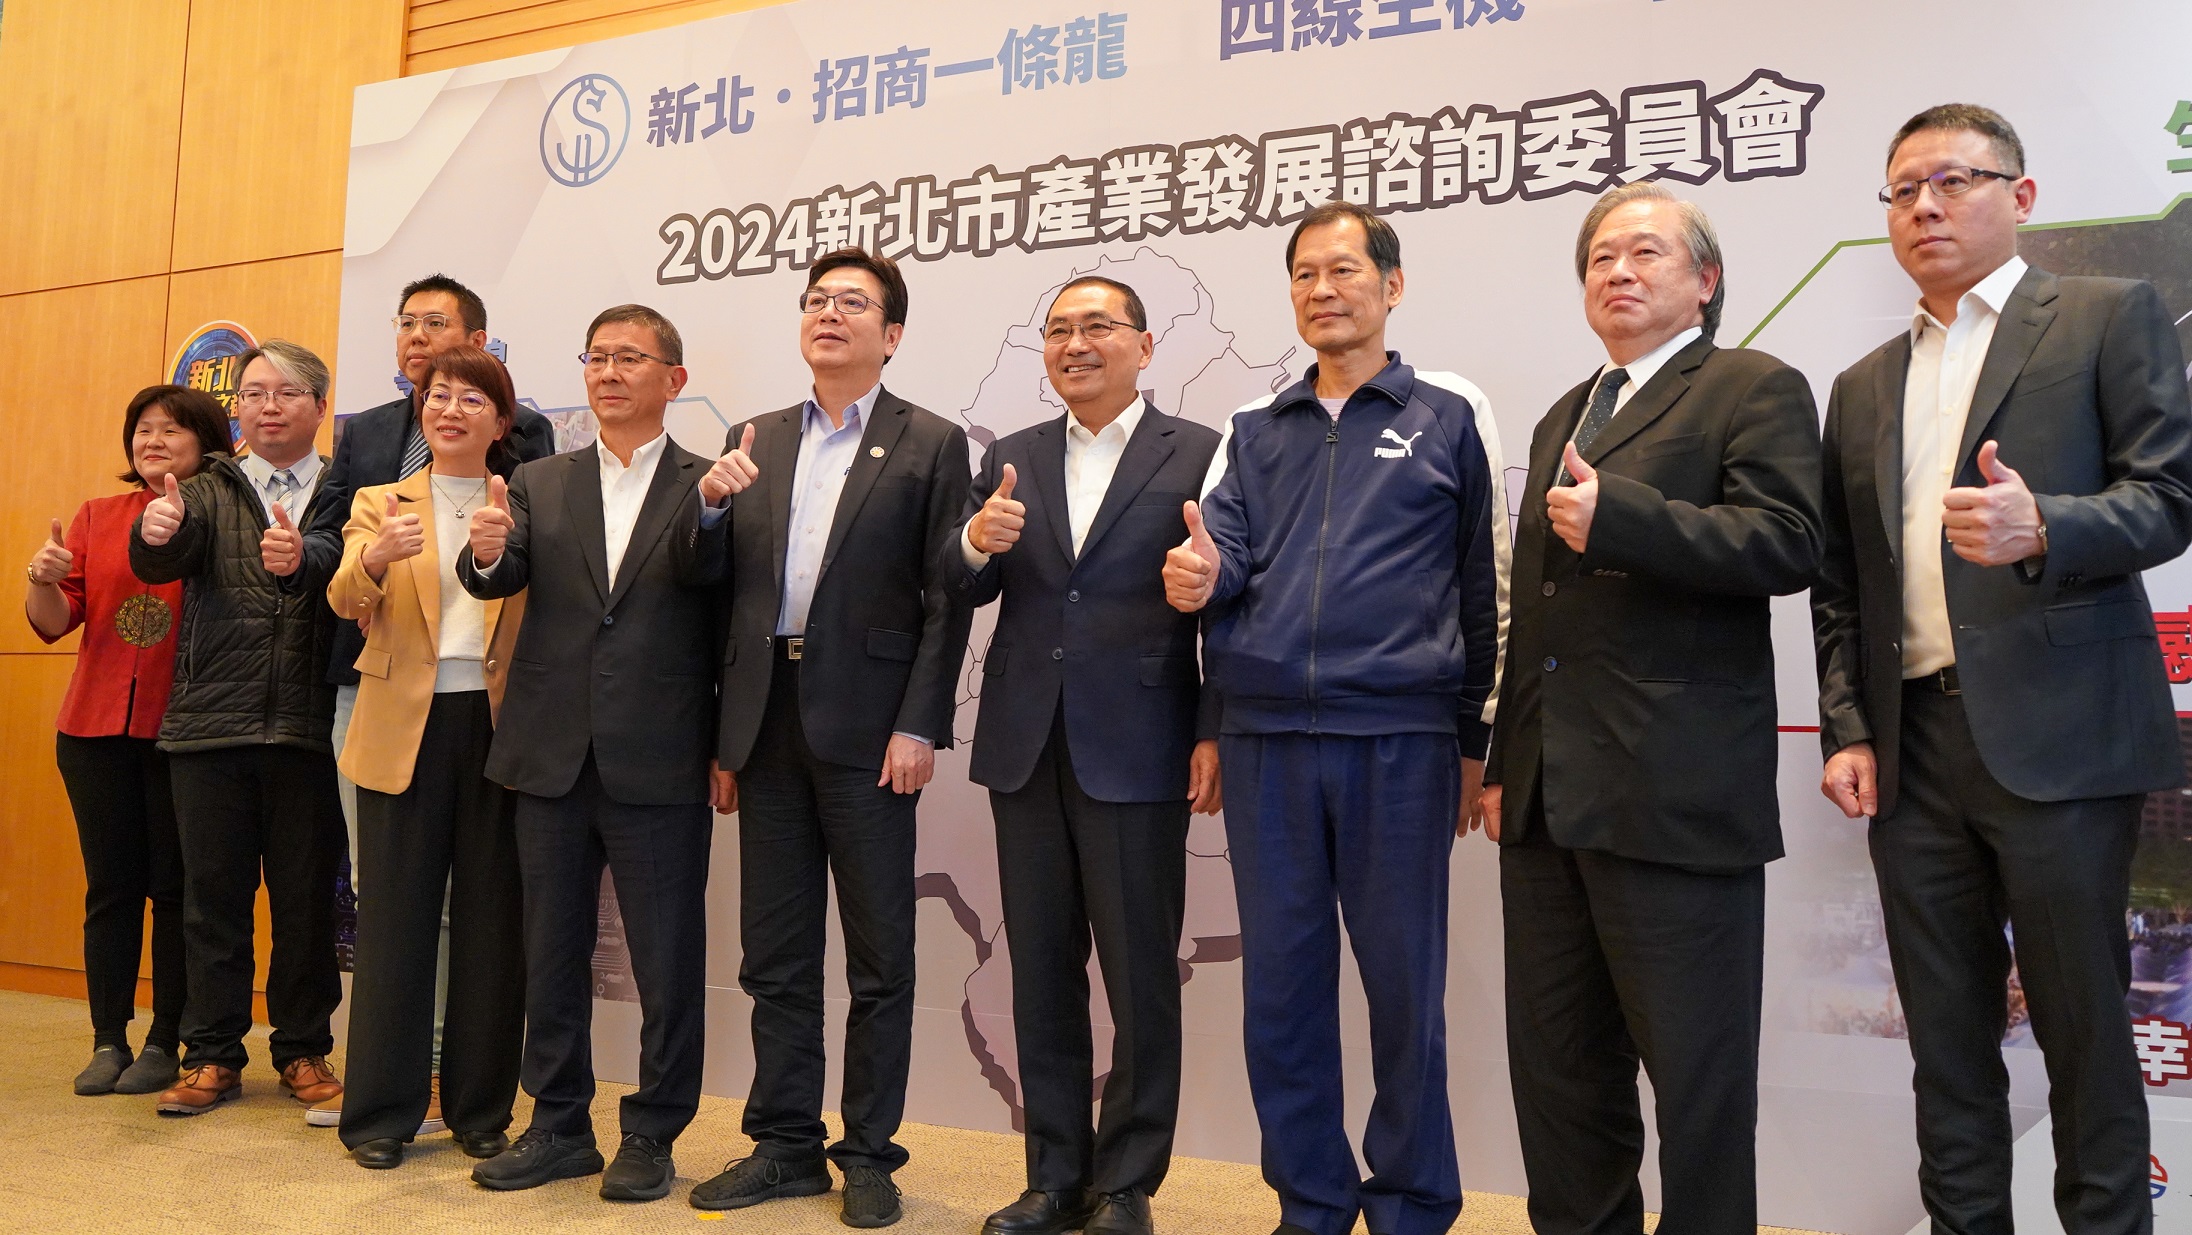 新北市長侯友宜(右4)及副市長劉和然(右5)與工商領袖代表合影。